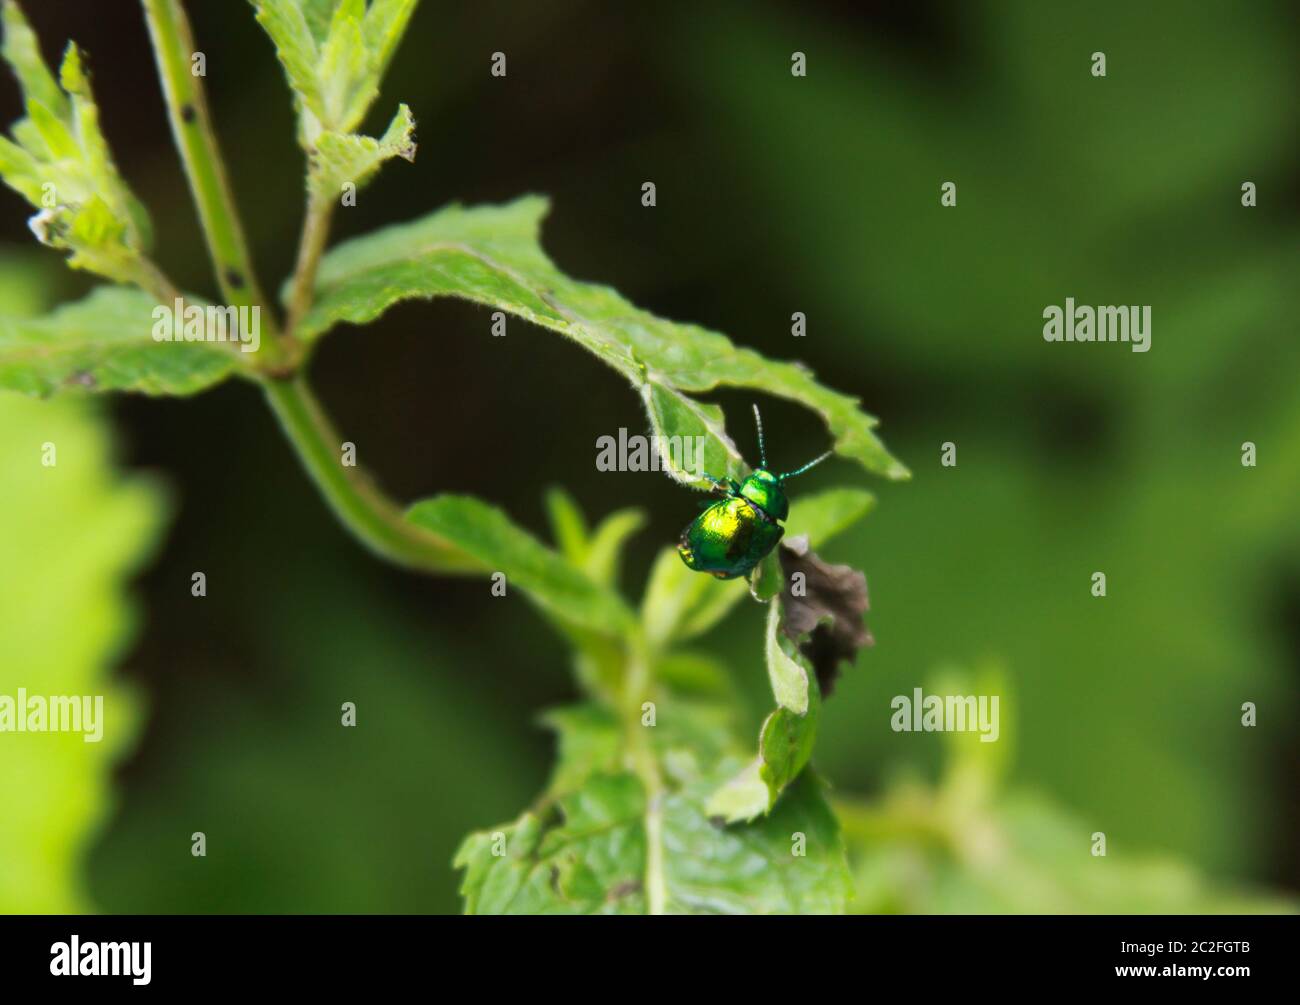 Un insetto lucido simile a una gemma su foglia verde Foto Stock